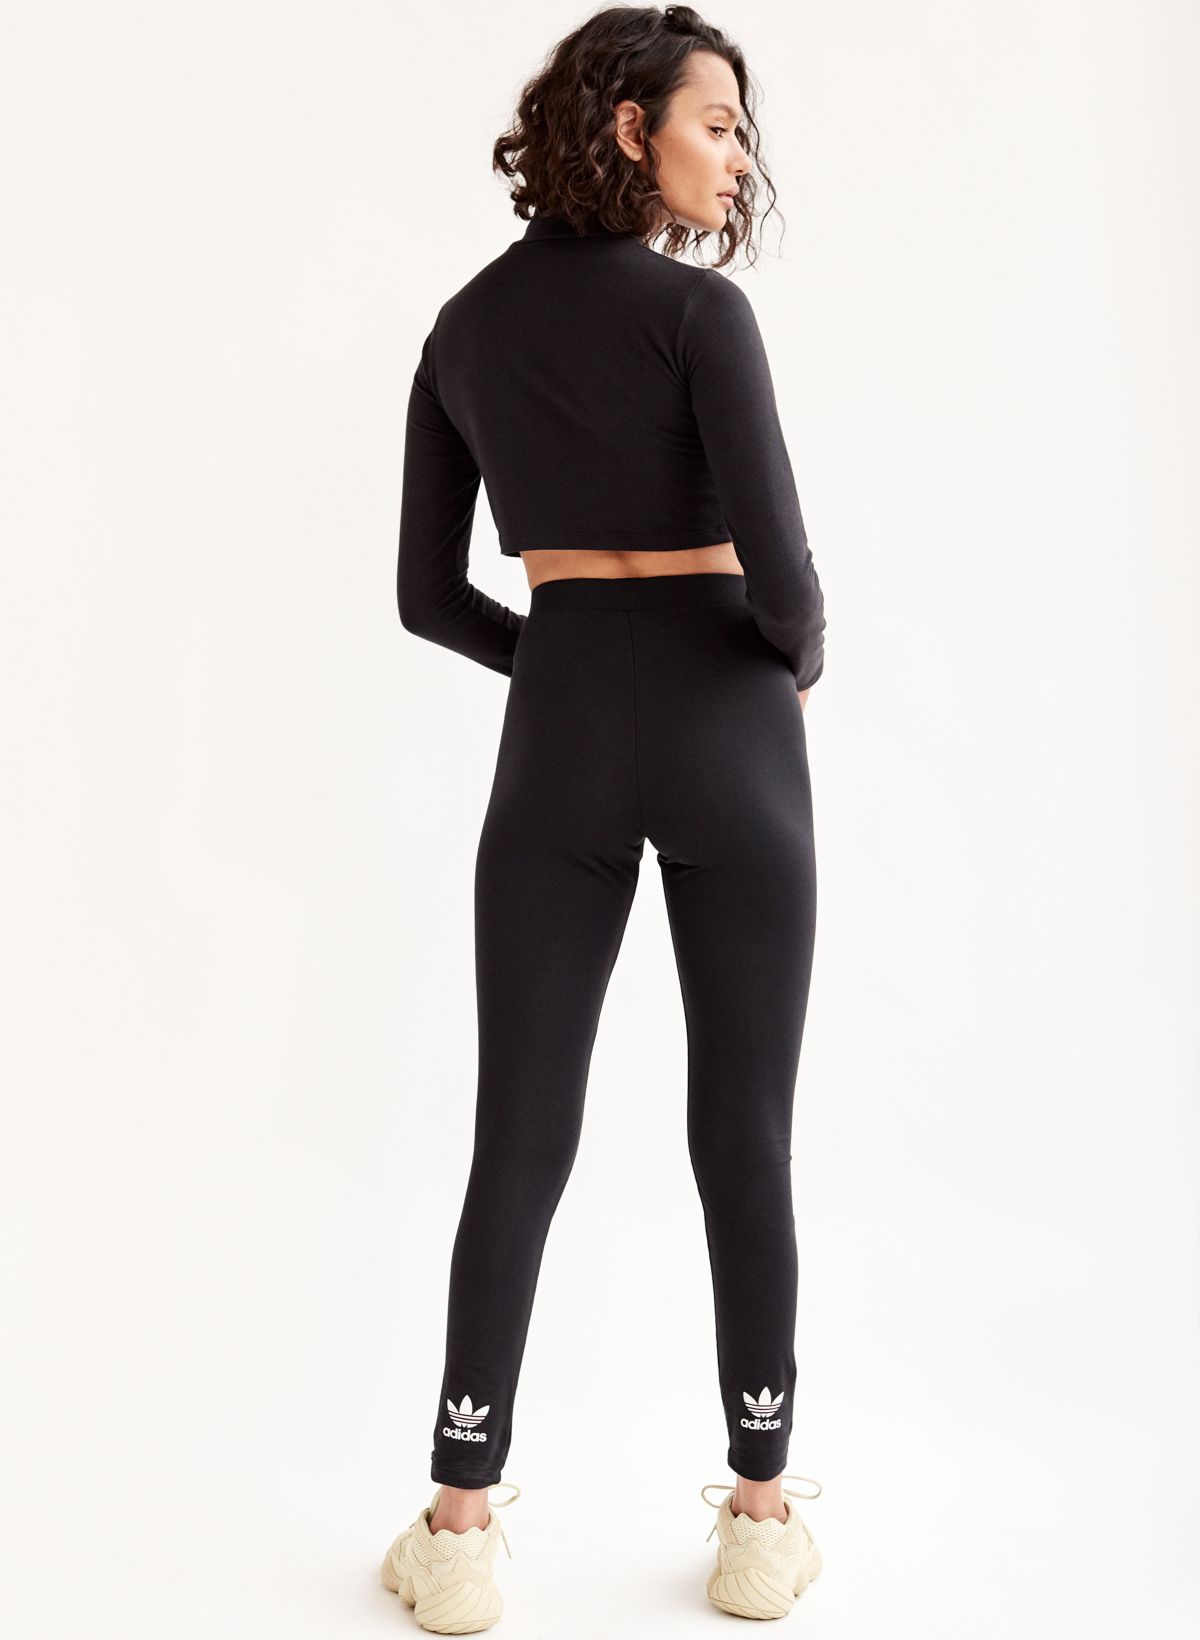 Adidas Womens Trefoil Logo Play Leggings Black XS H62045 NWT